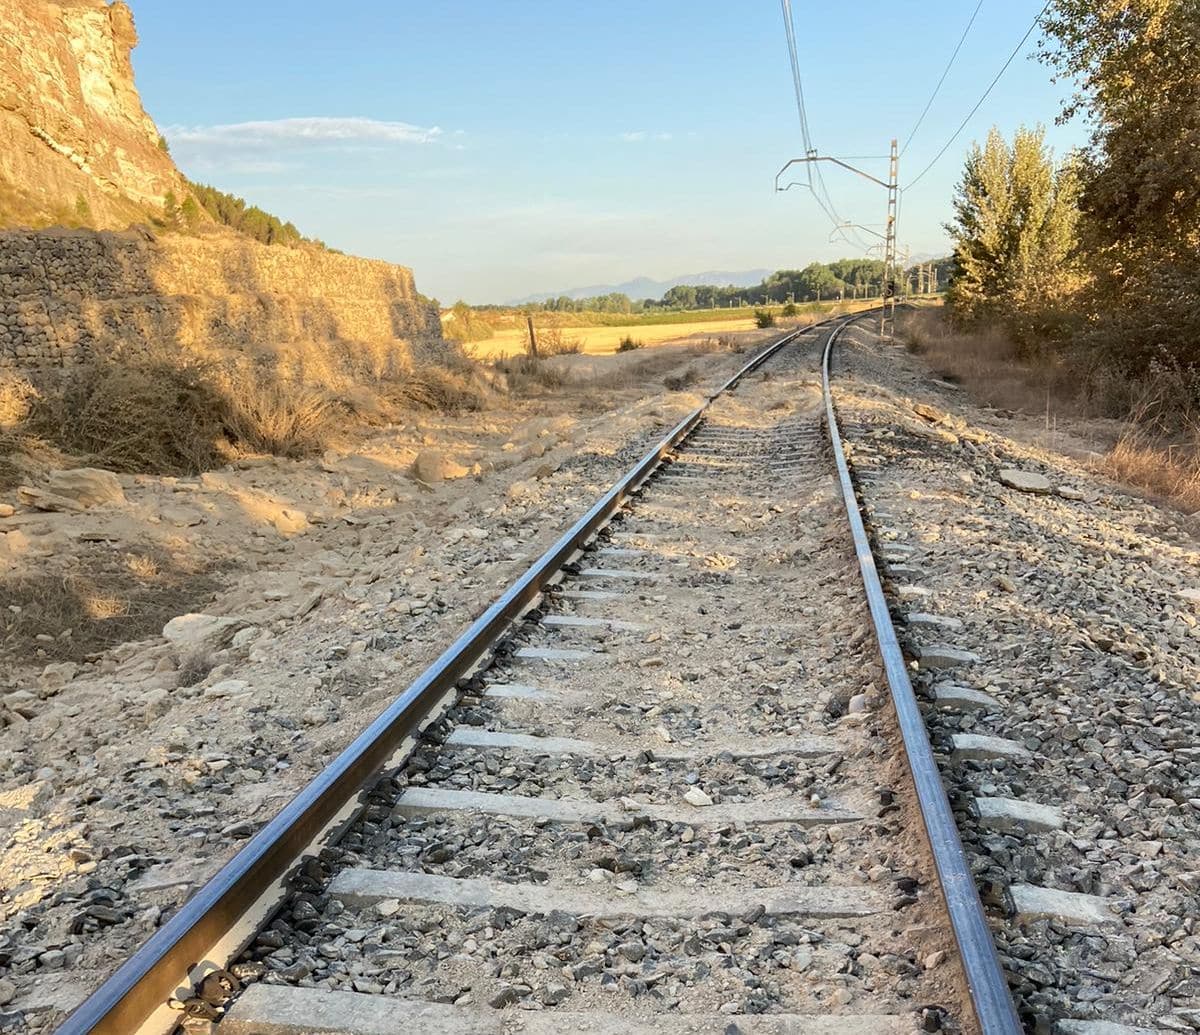 Un desprendimiento de tierra obliga a cortar el tráfico ferroviario entre Logroño y Zaragoza 4